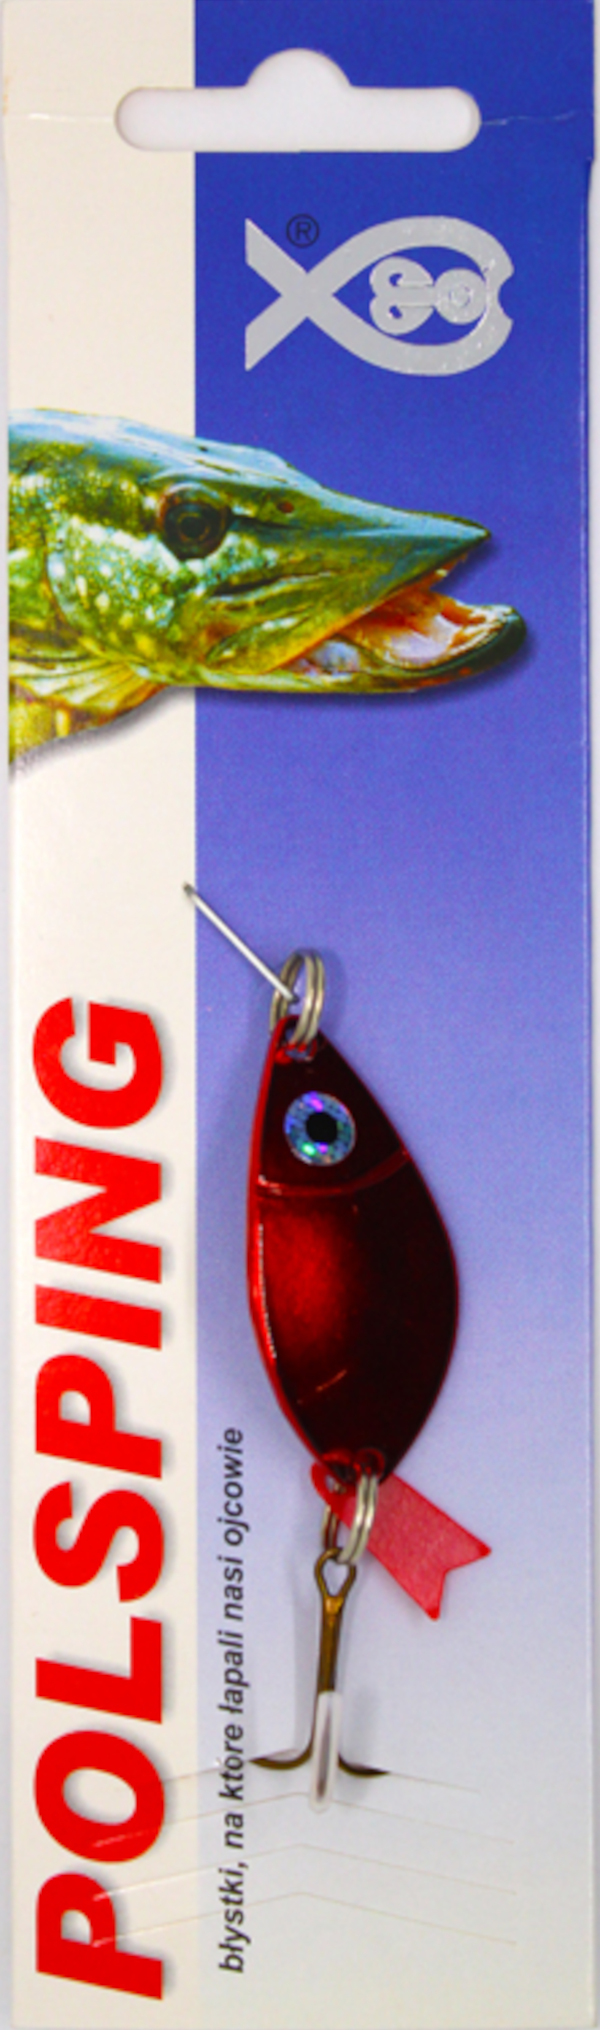 Polsping Alga Blinker - Nickel Red 7cm 9g